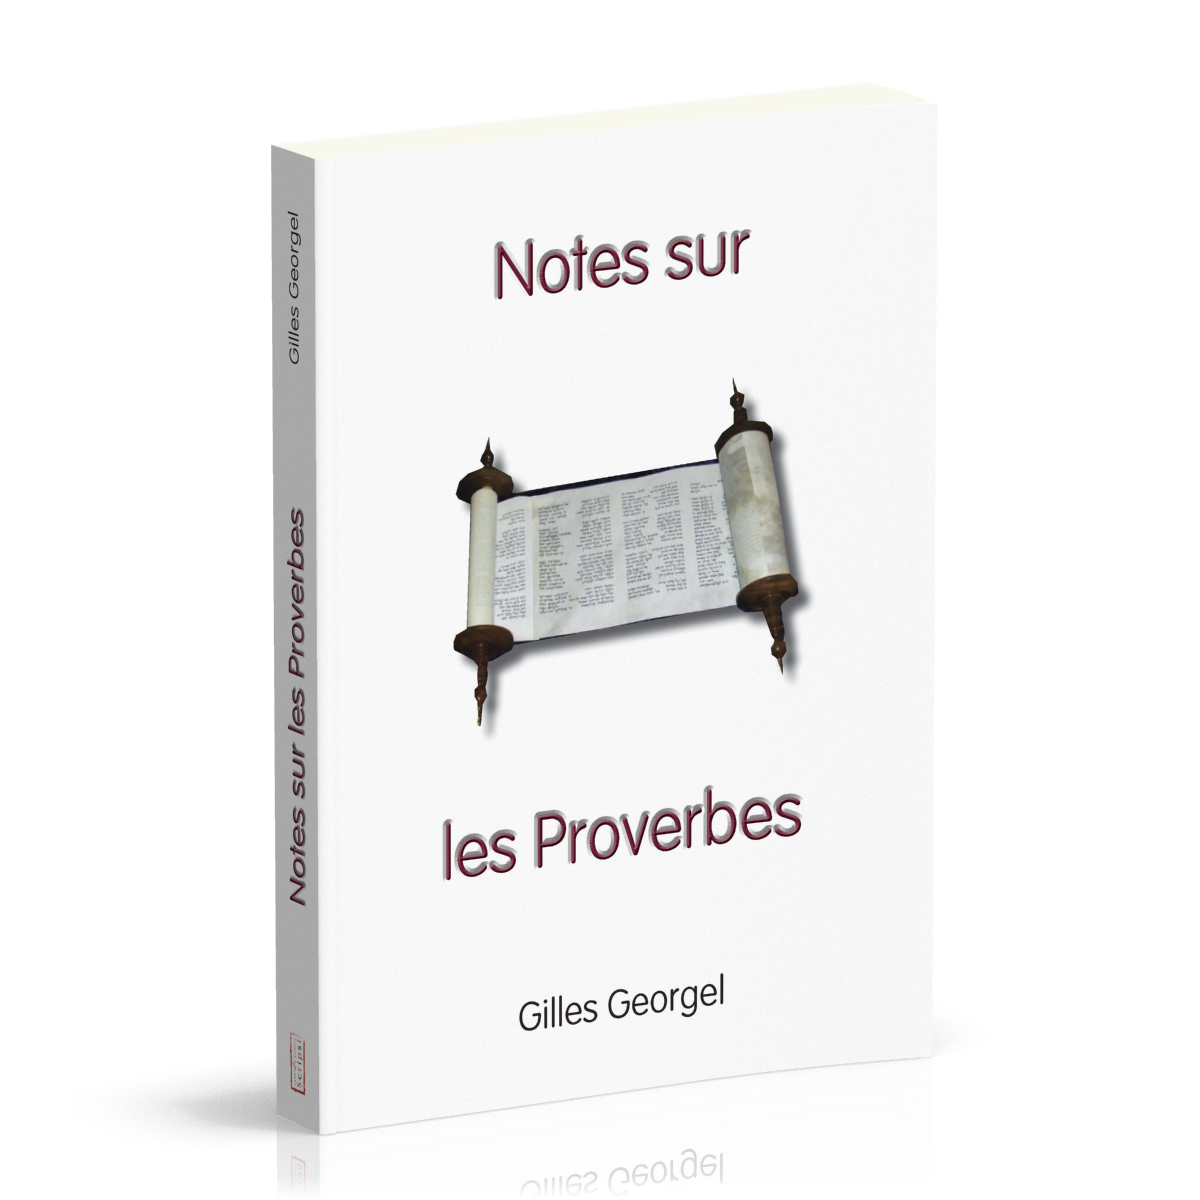 Notes sur les Proverbes